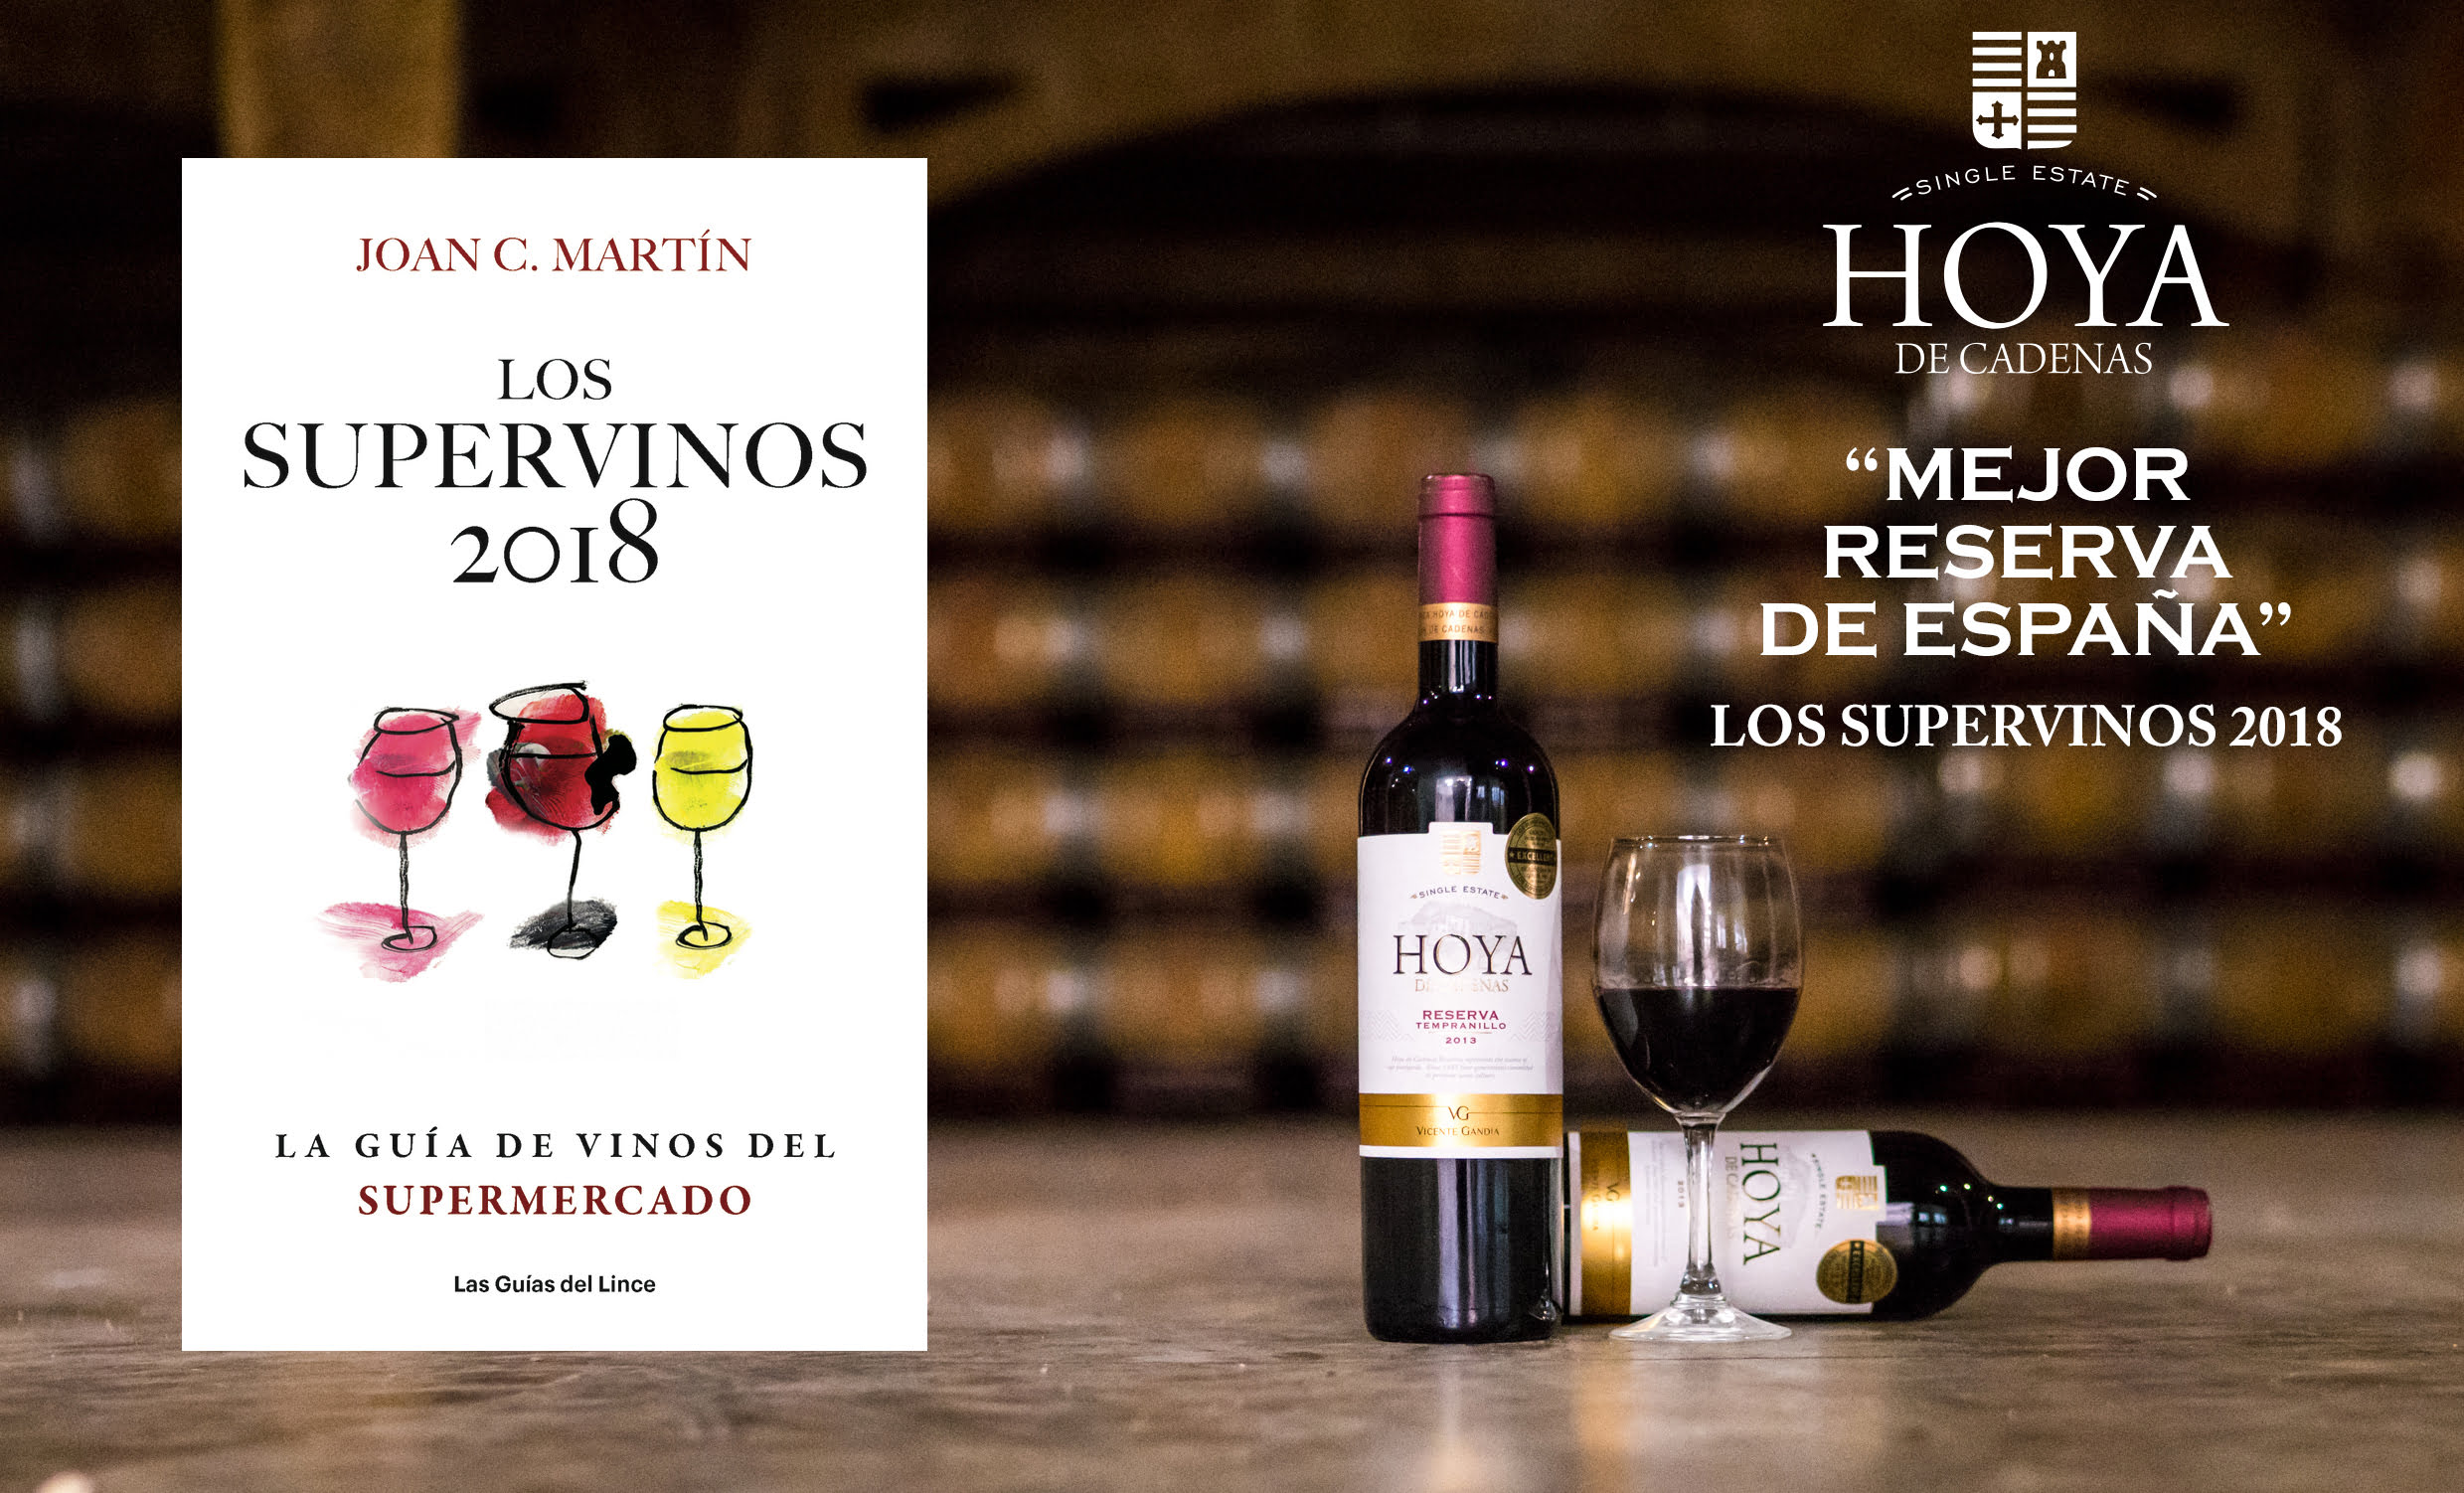 Hoya de Cadenas Reserva Tempranillo, el mejor vino de España según ‘Los Supervinos’